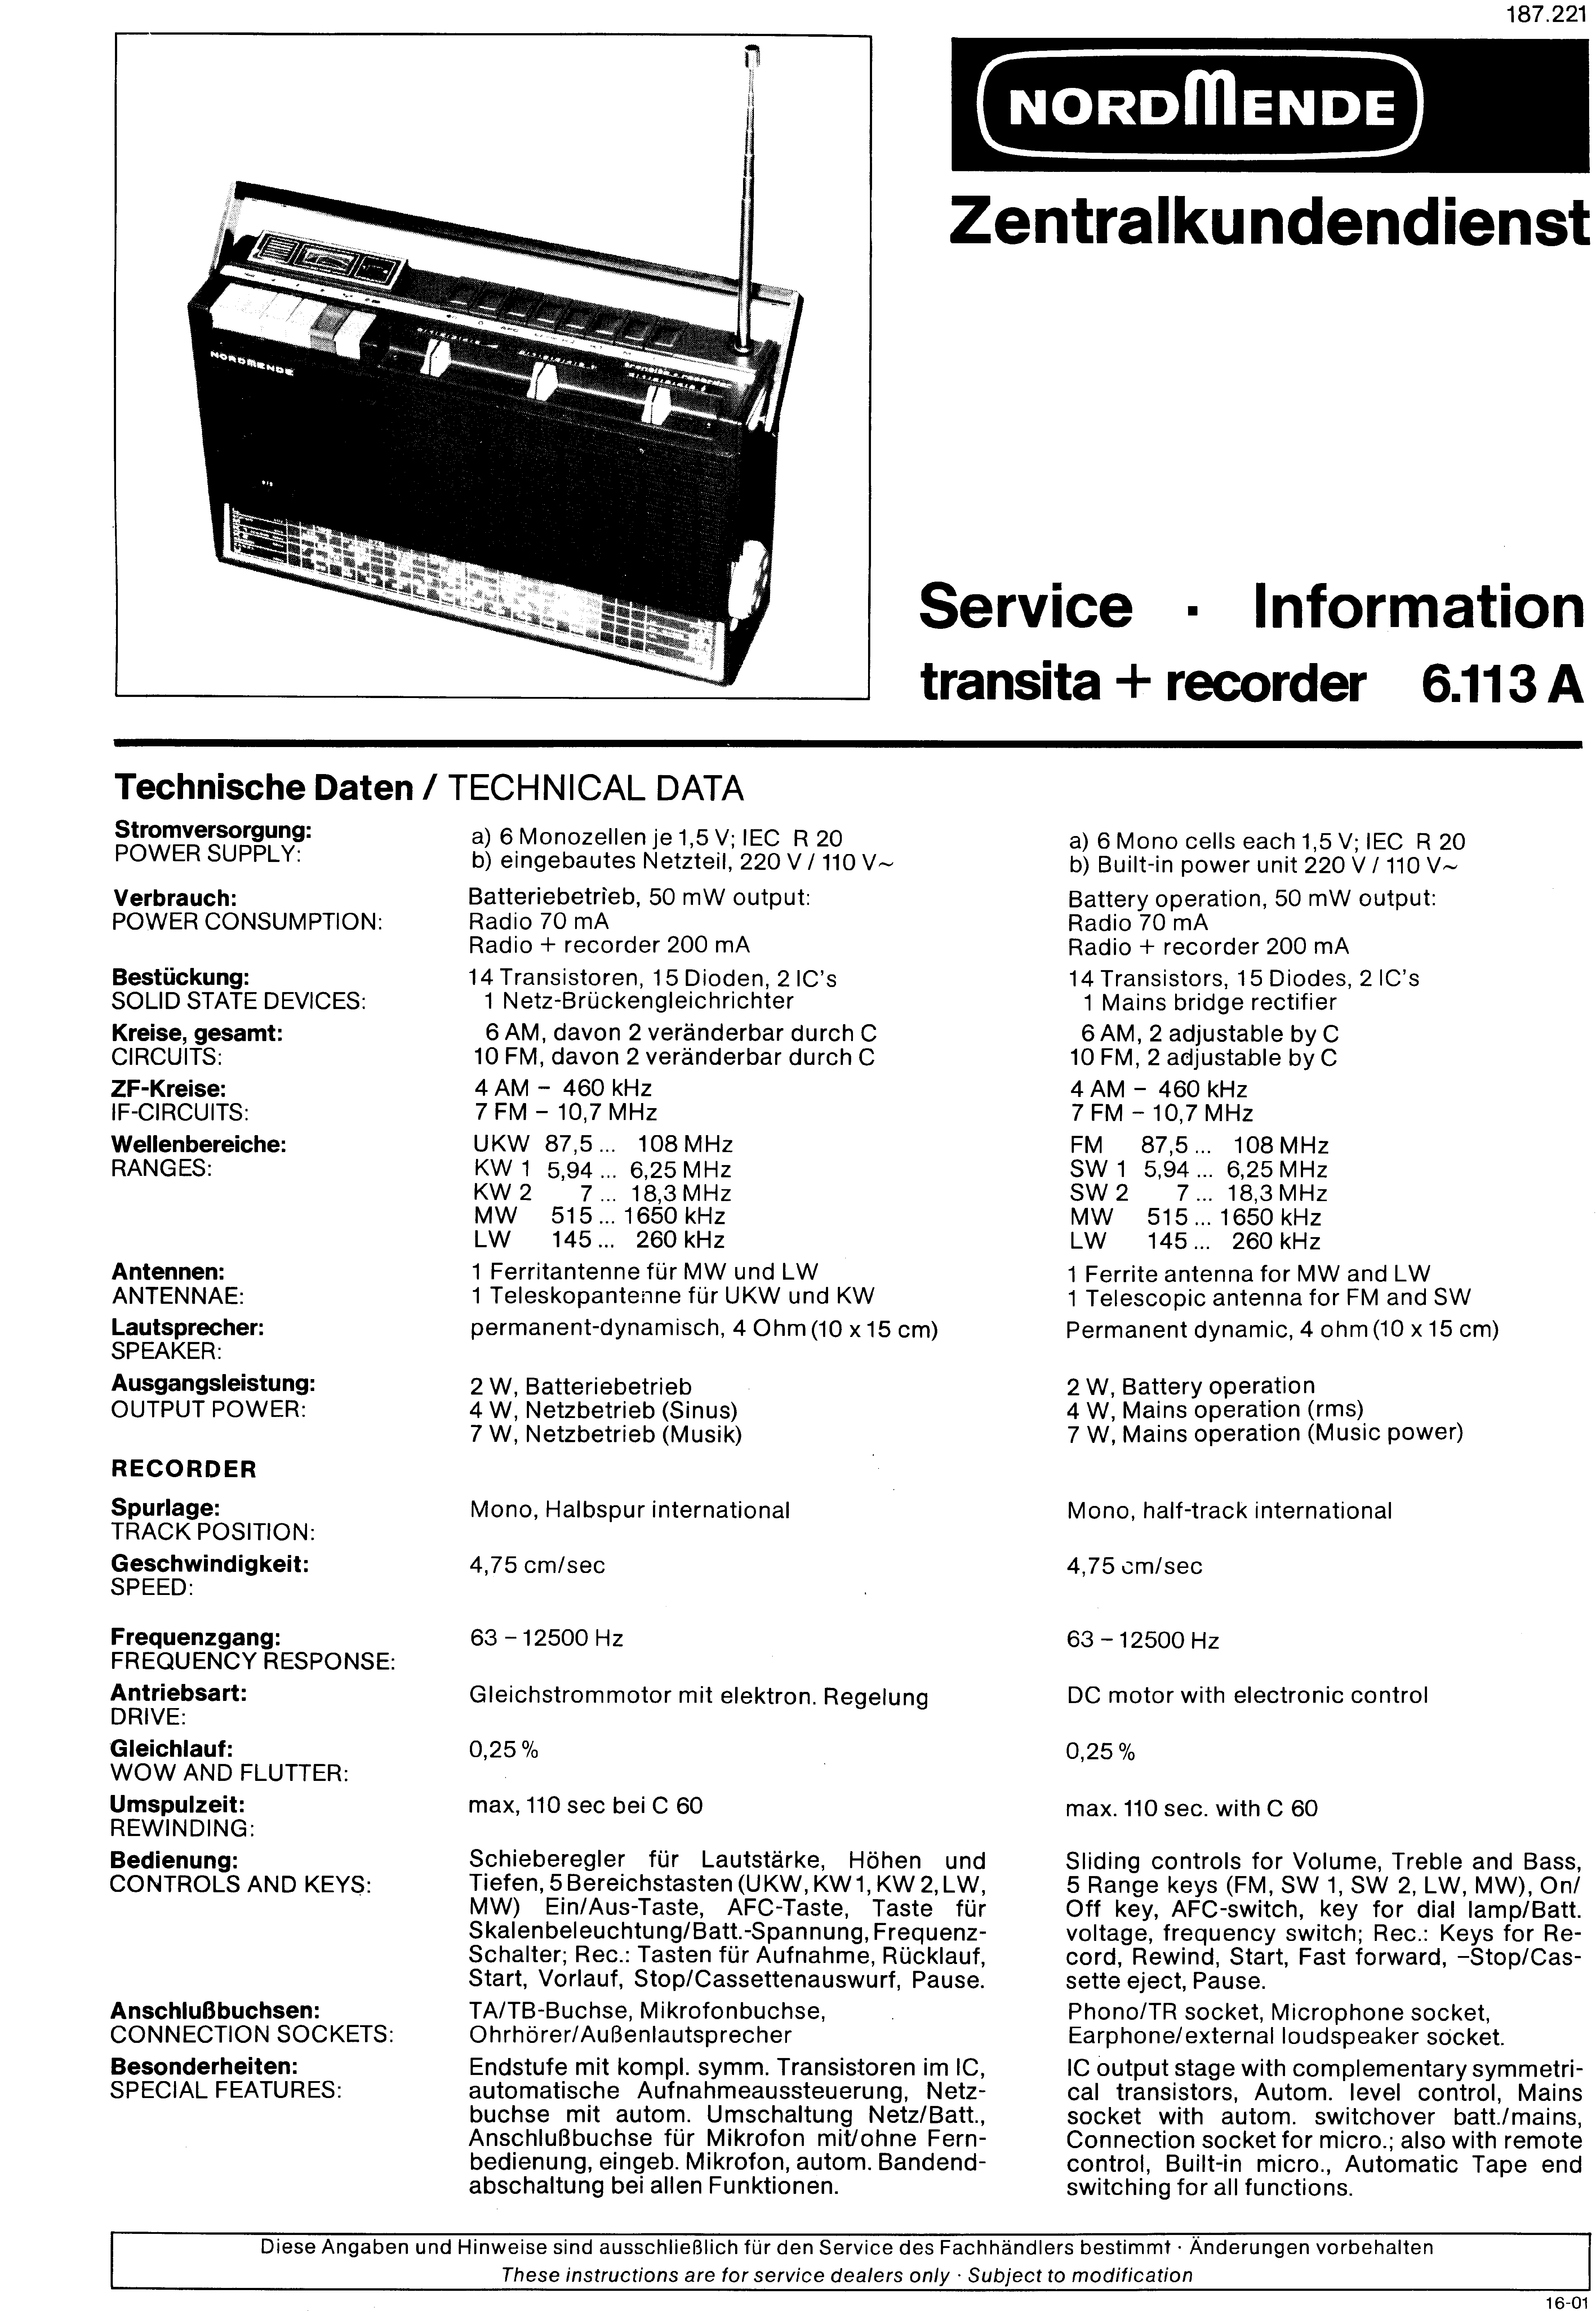 Service Manual-Anleitung für Nordmende Transita Exact 969.104 A 